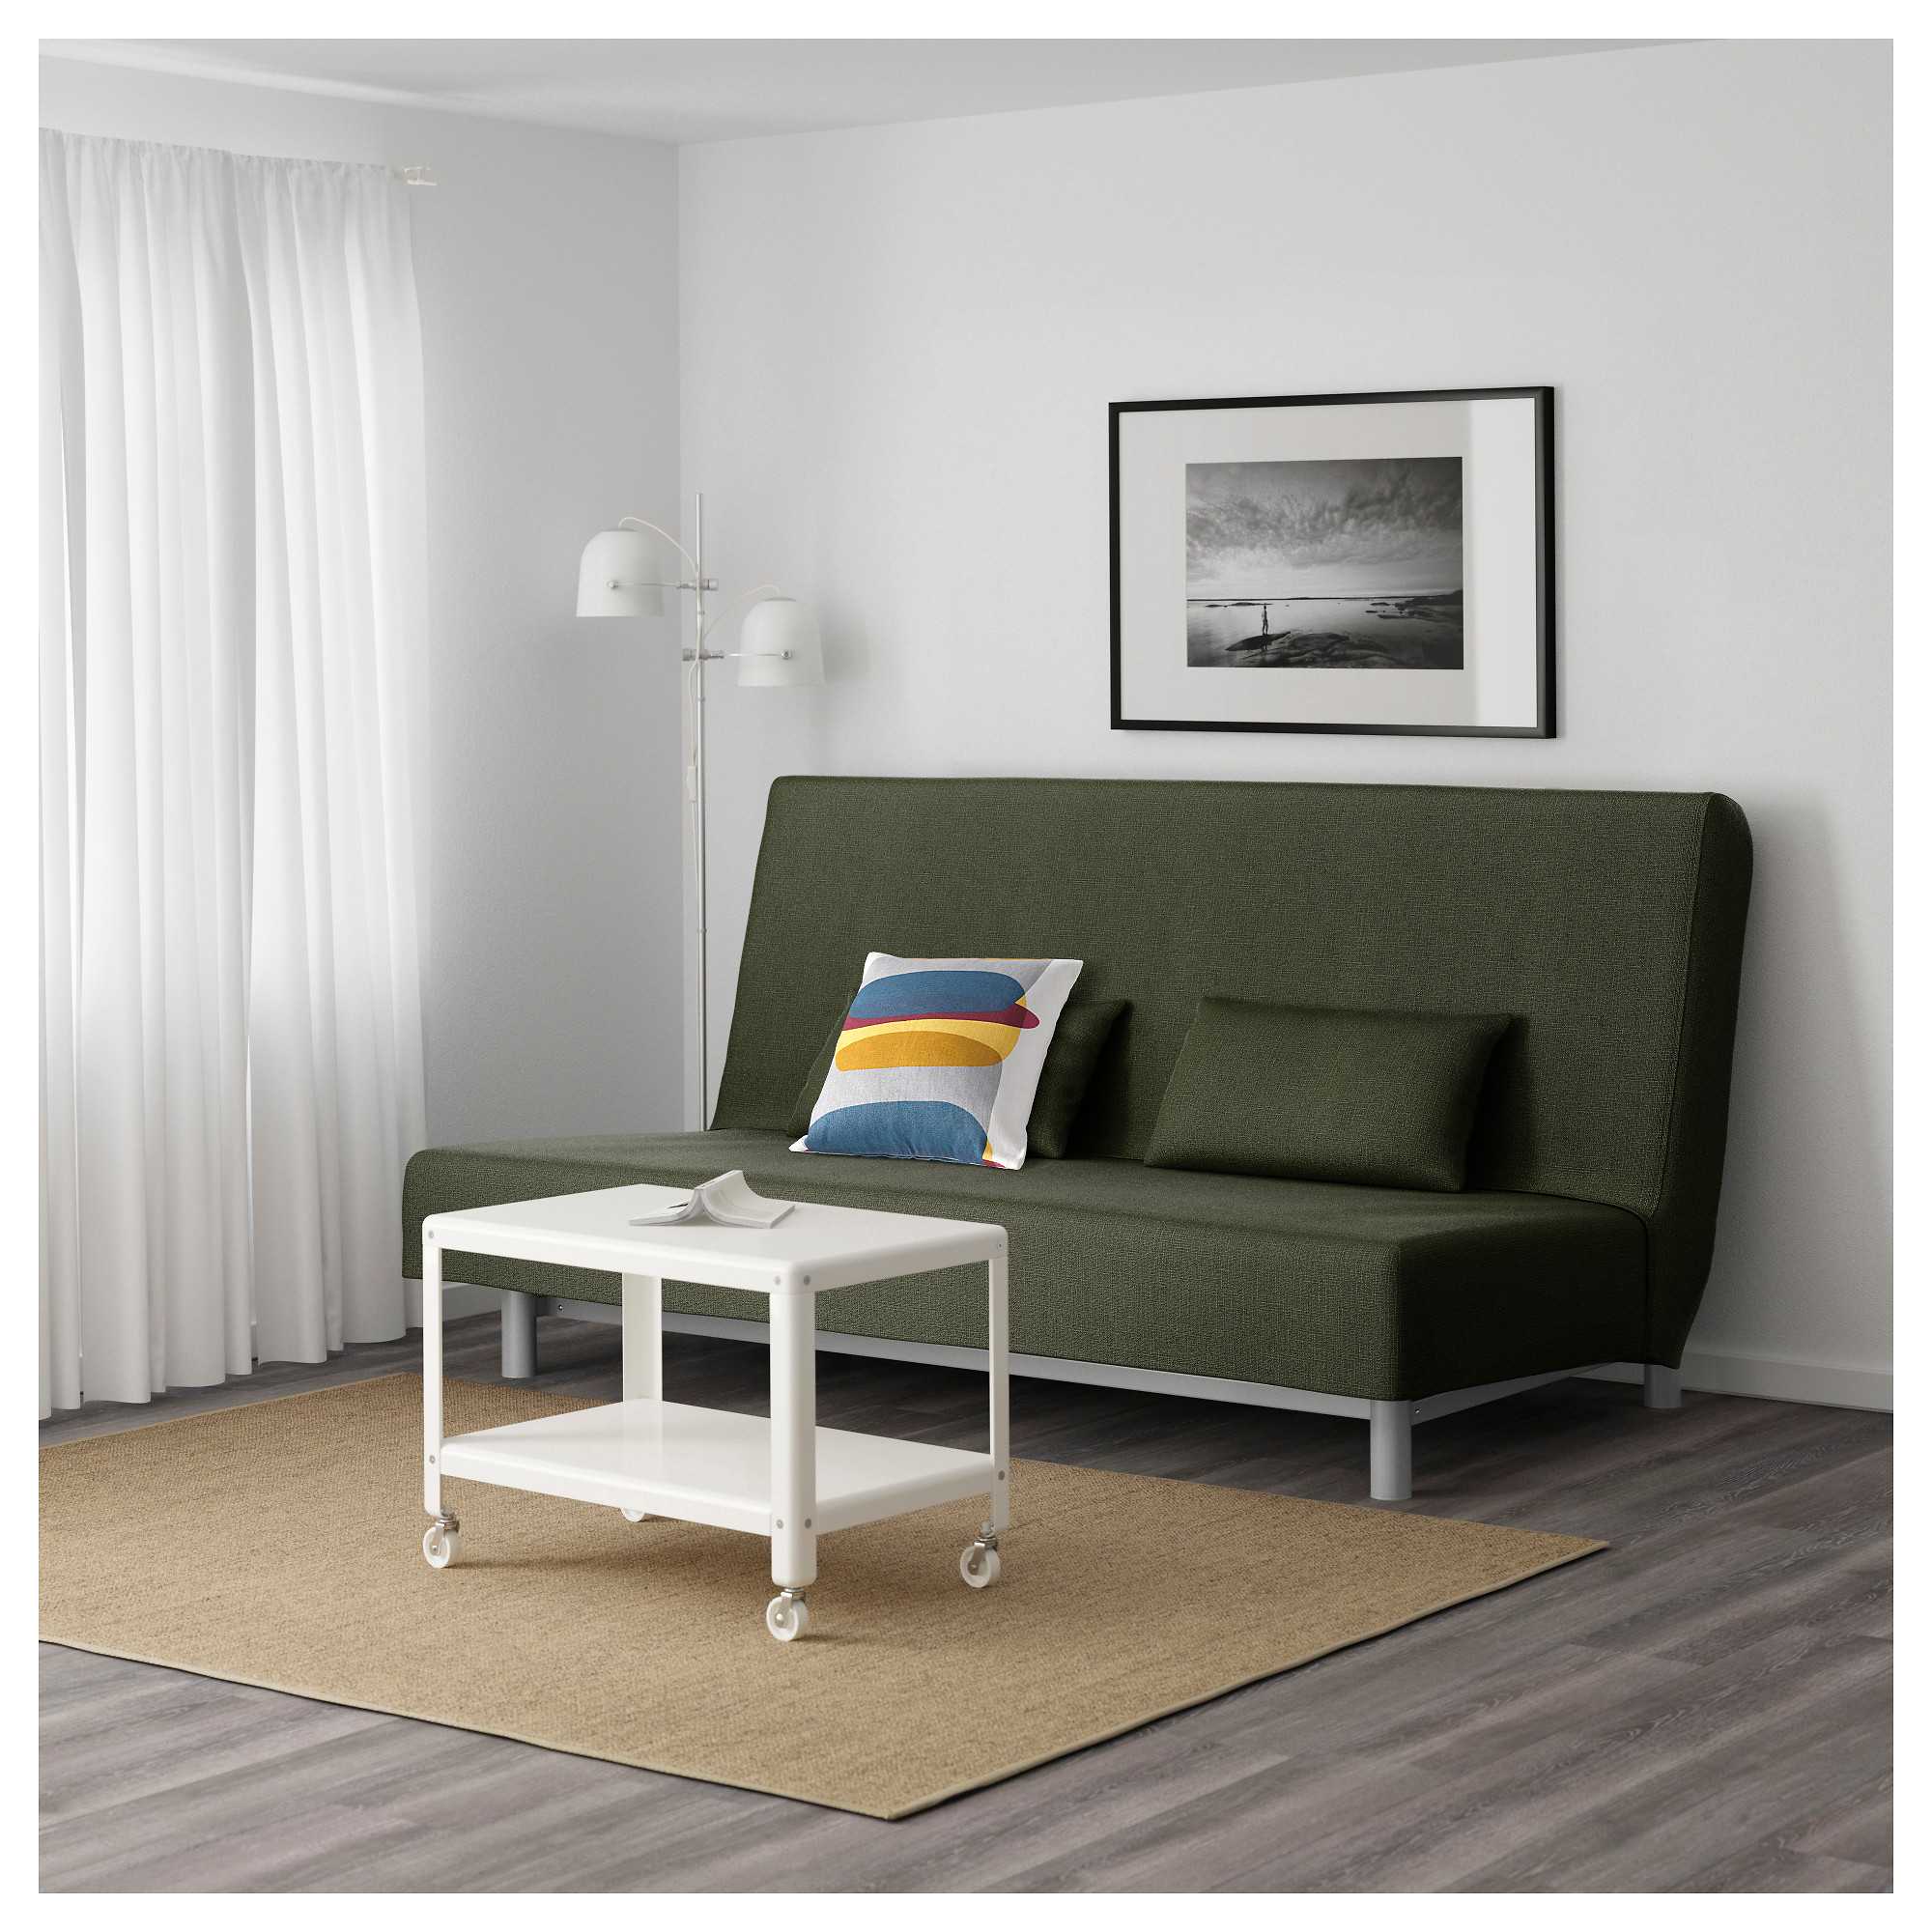 Популярный диван-кровать бединге от икеа: разбор плюсов и минусов